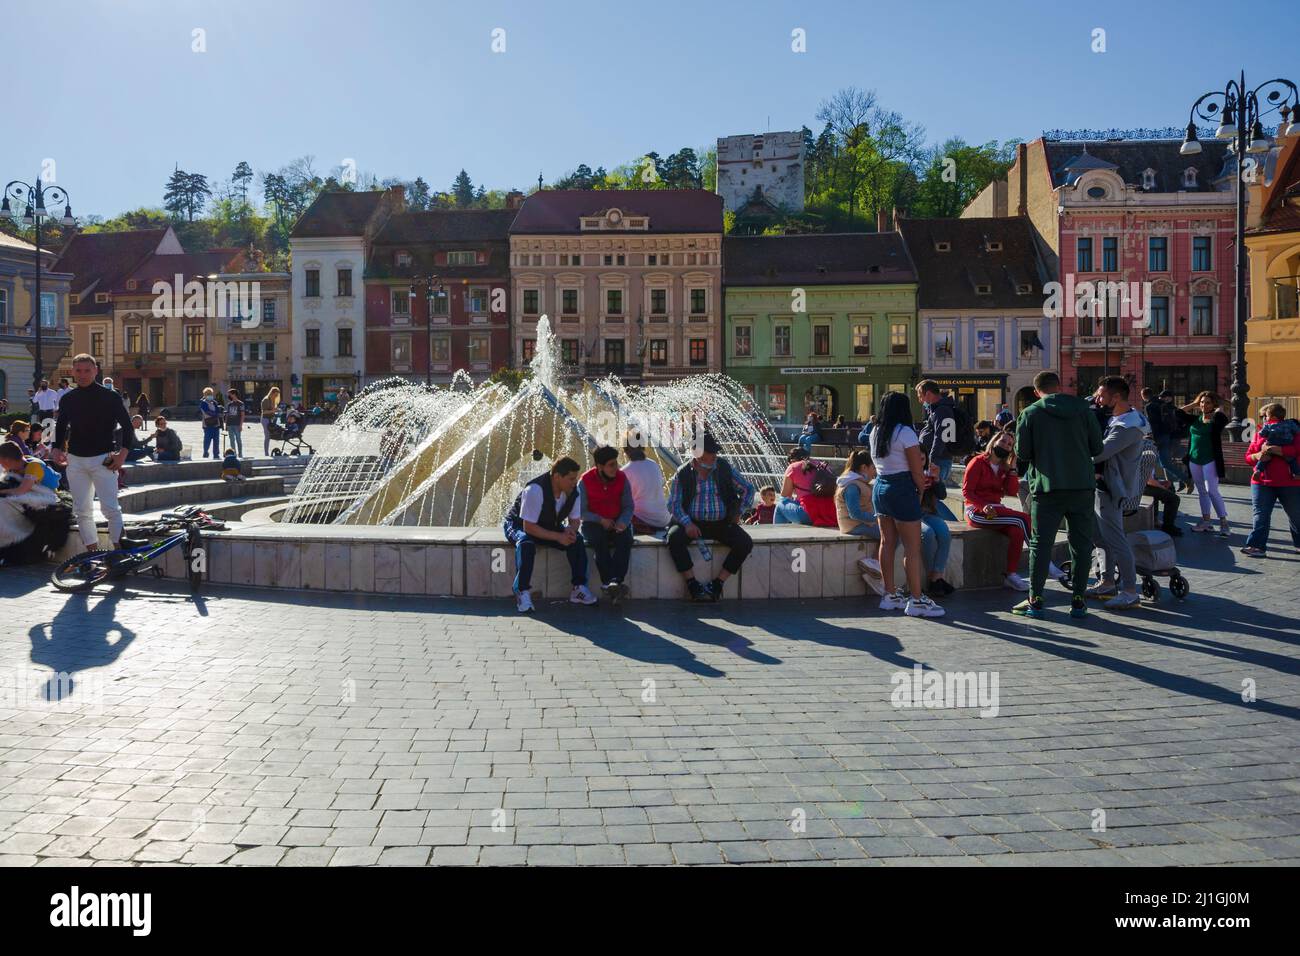 Gesamtansicht des Ratsplatzes im historischen Zentrum von Brasov, Rumänien - Foto: Geopix Stockfoto